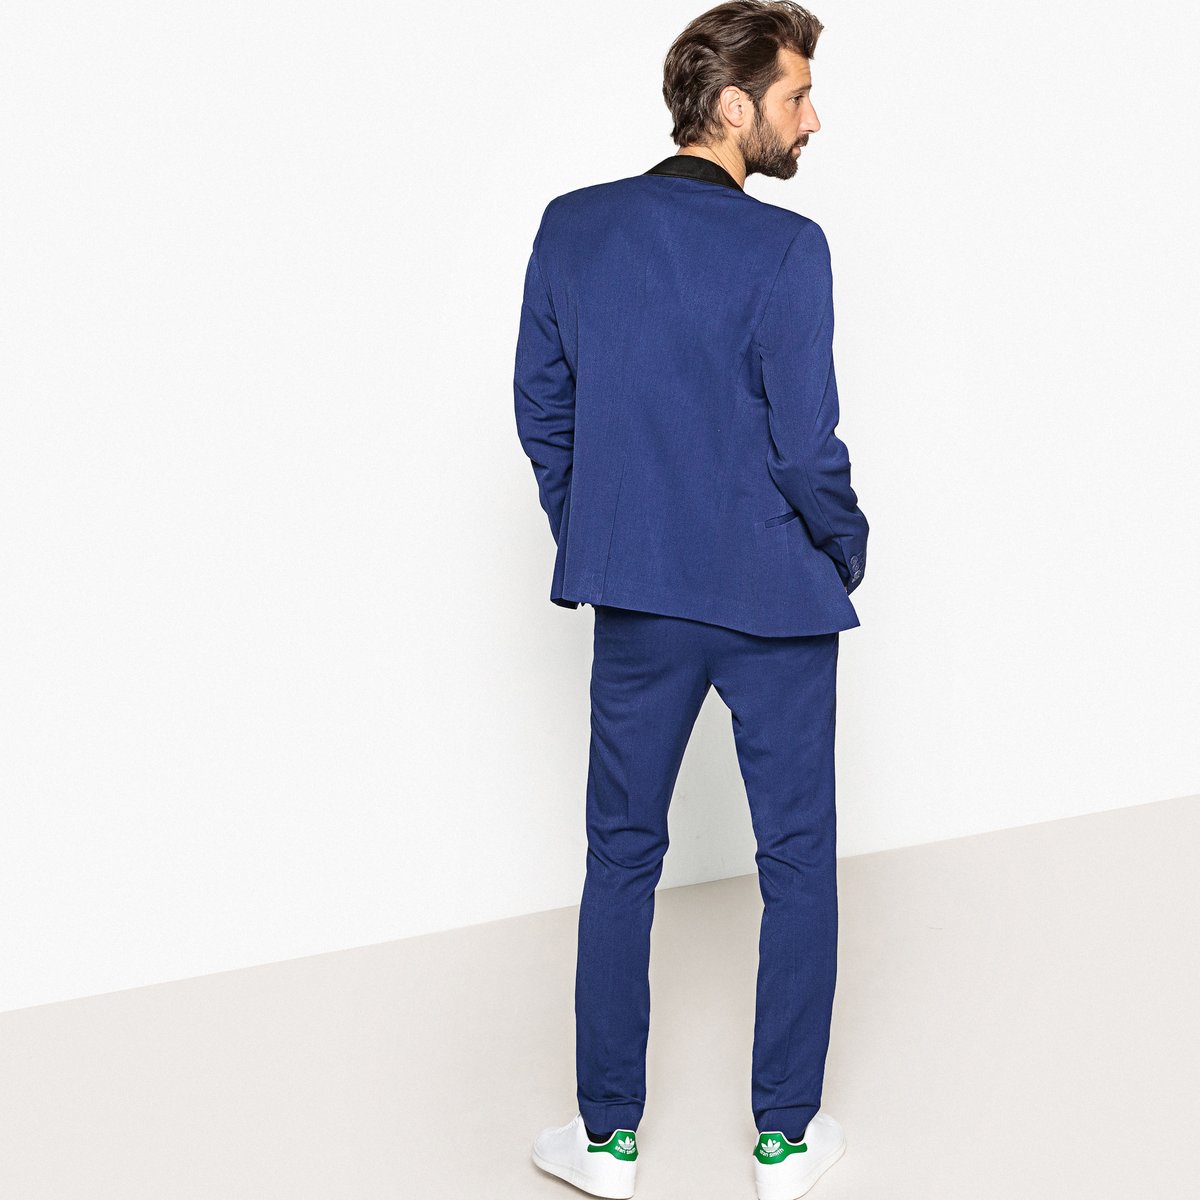 Пиджак La Redoute Костюмный приталенного покроя 48 синий, размер 48 - фото 4